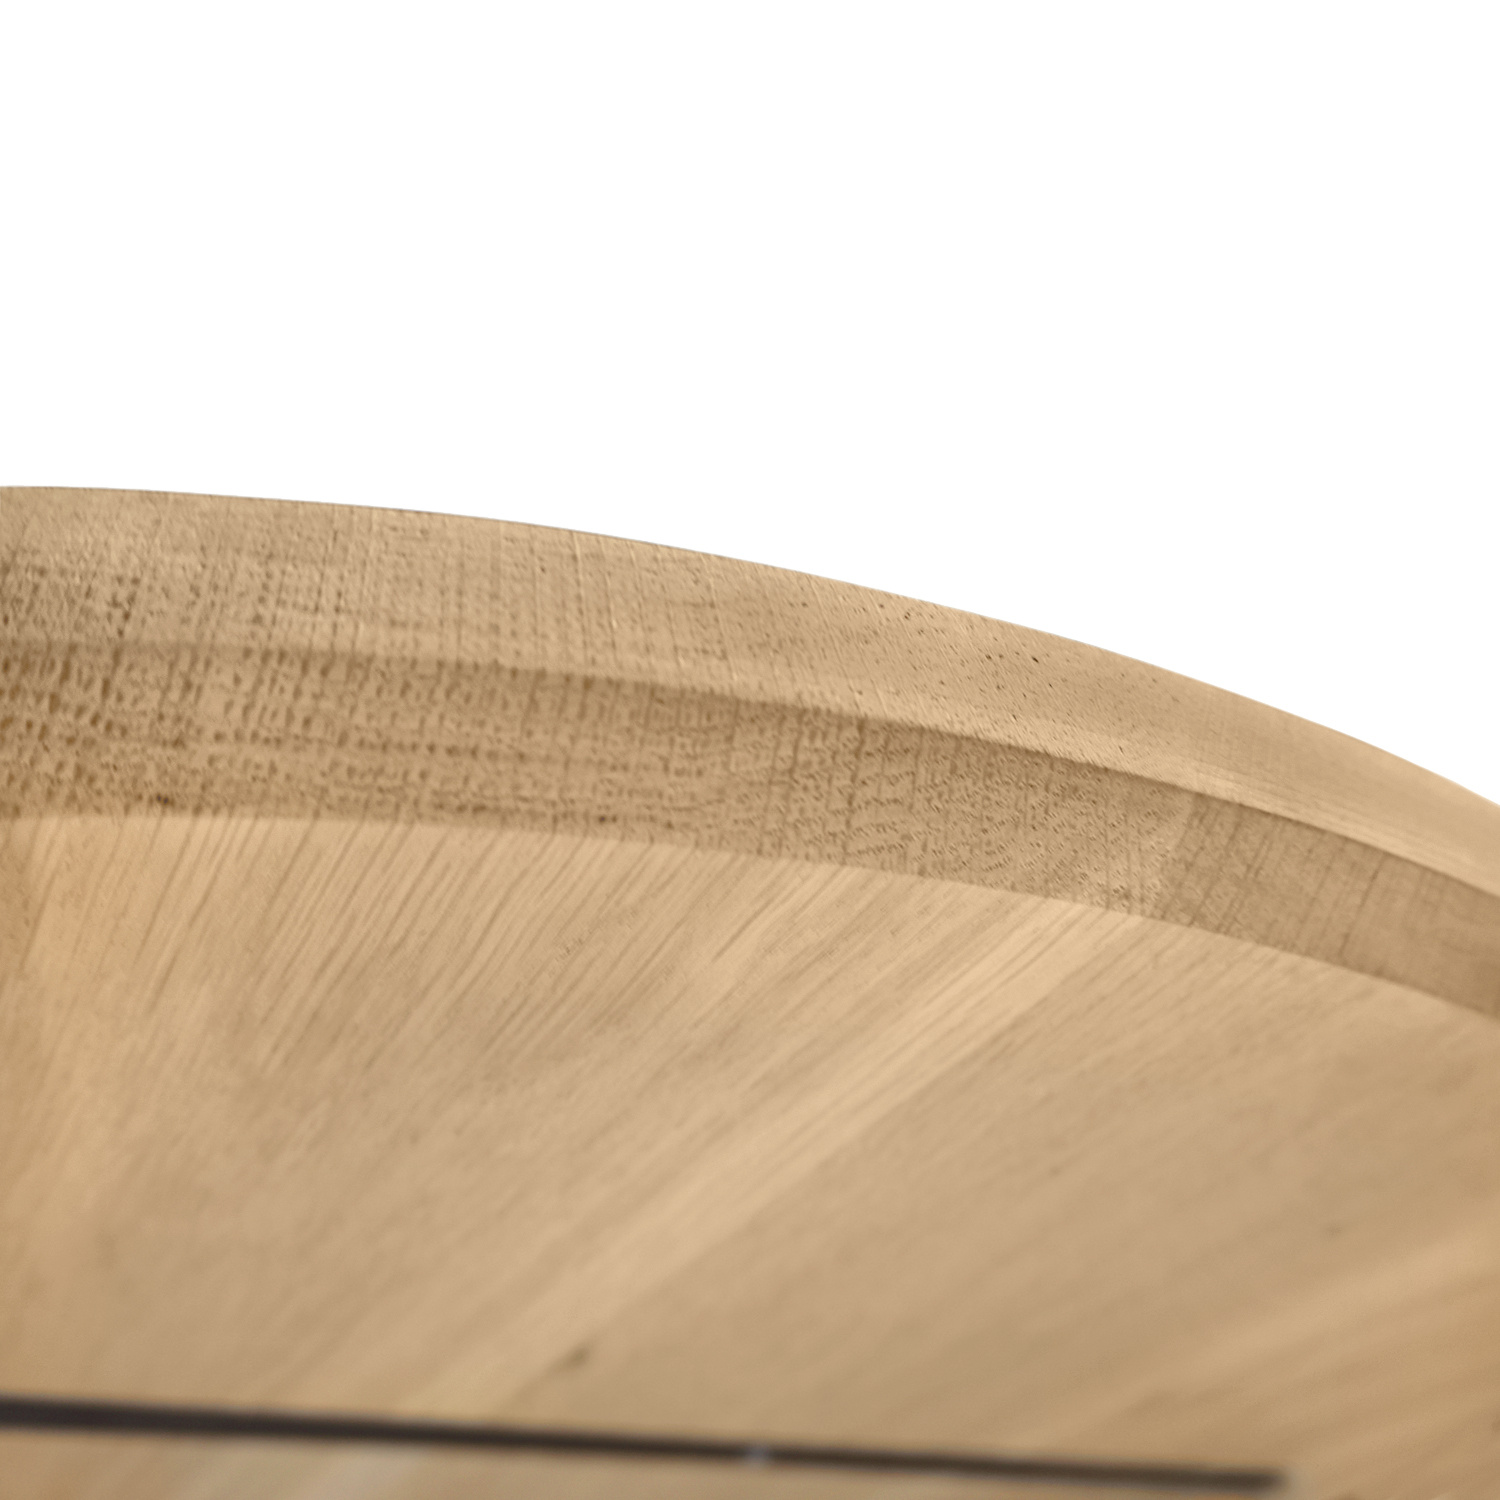  Tischplatte Wildeiche rund nach Maß - 3 cm dick (1-Schicht) - XXL Lamellen (14-20 cm breit) - Asteiche (rustikal) - verleimt & künstlich getrocknet (HF 8-12%) - Durchmesser: 40 - 117 cm